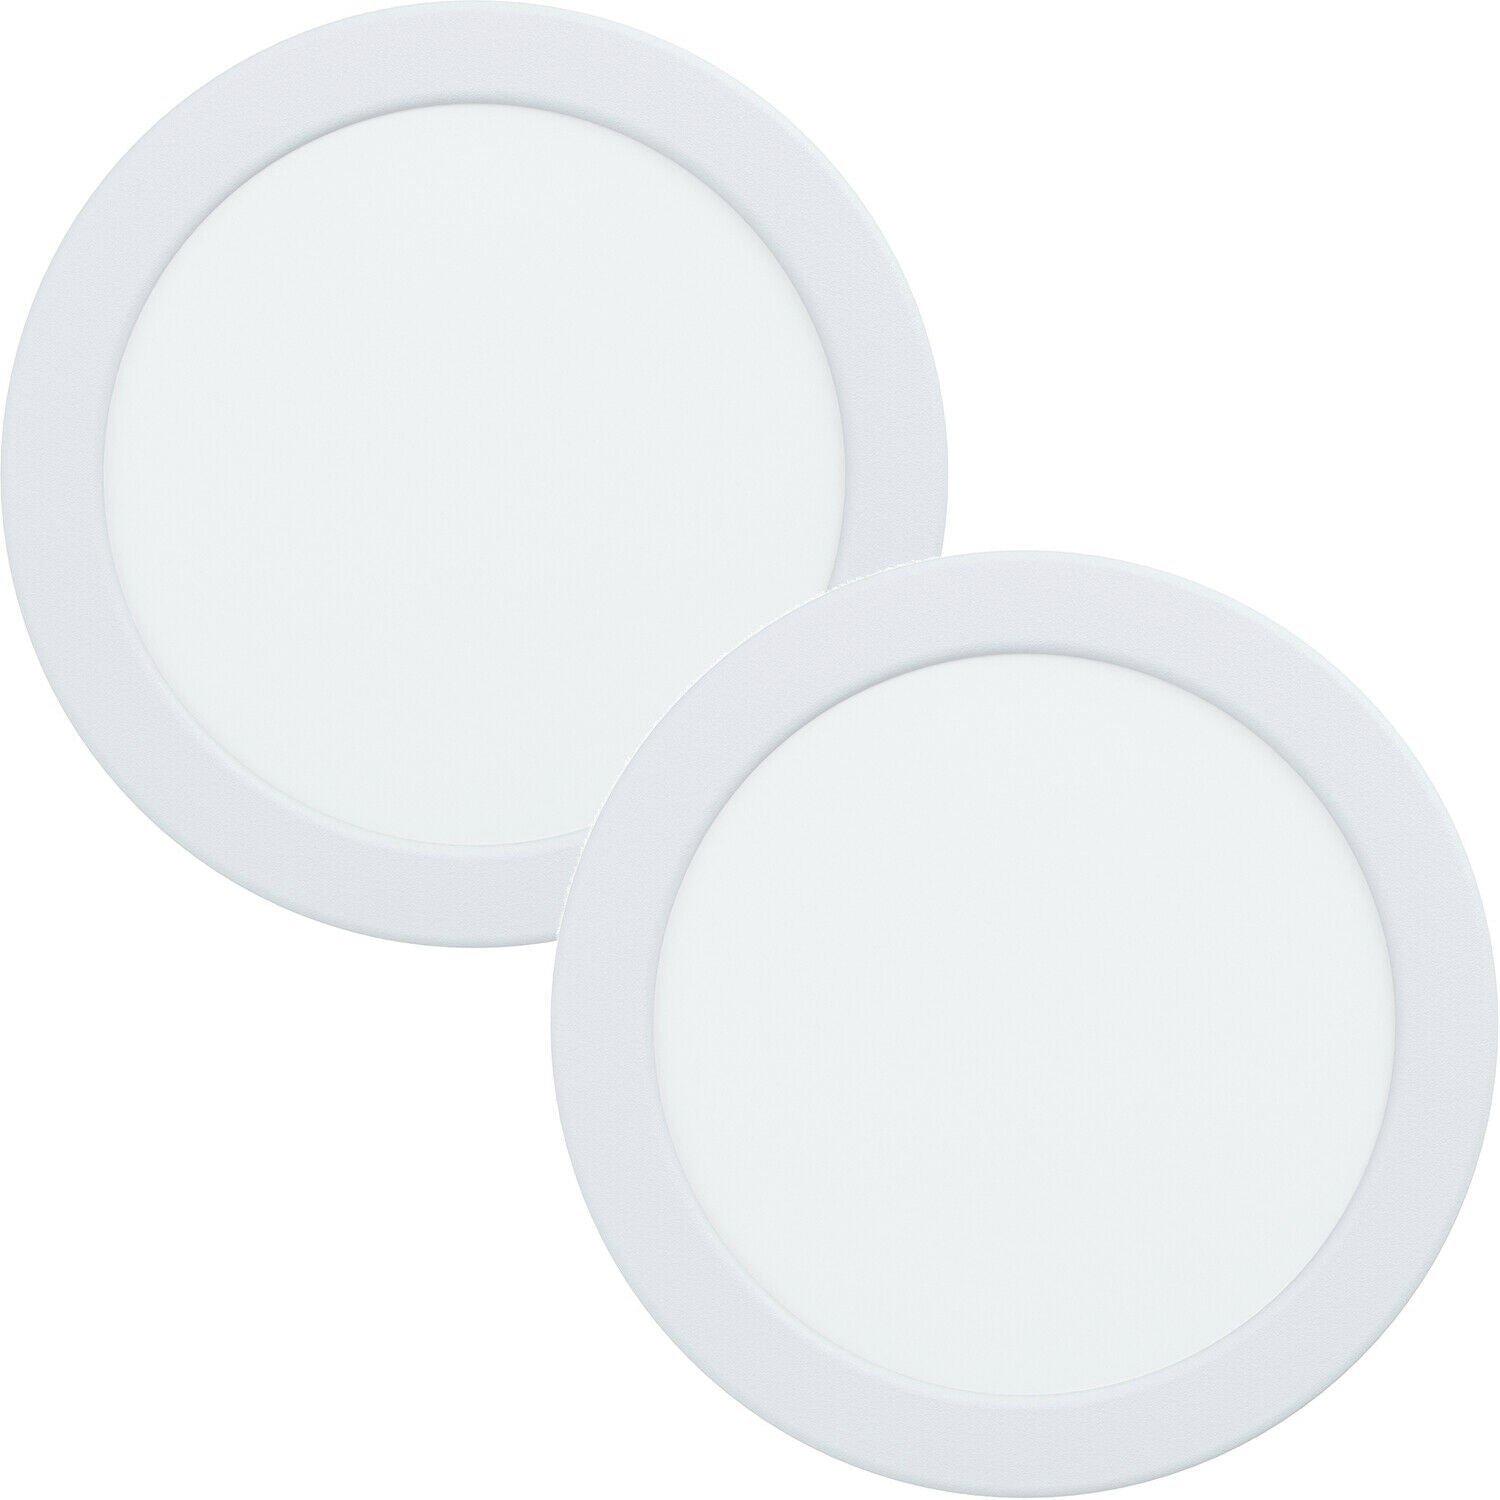 2 PACK Wall / Ceiling Flush Downlight White Round Spotlight 10.5W LED 3000K